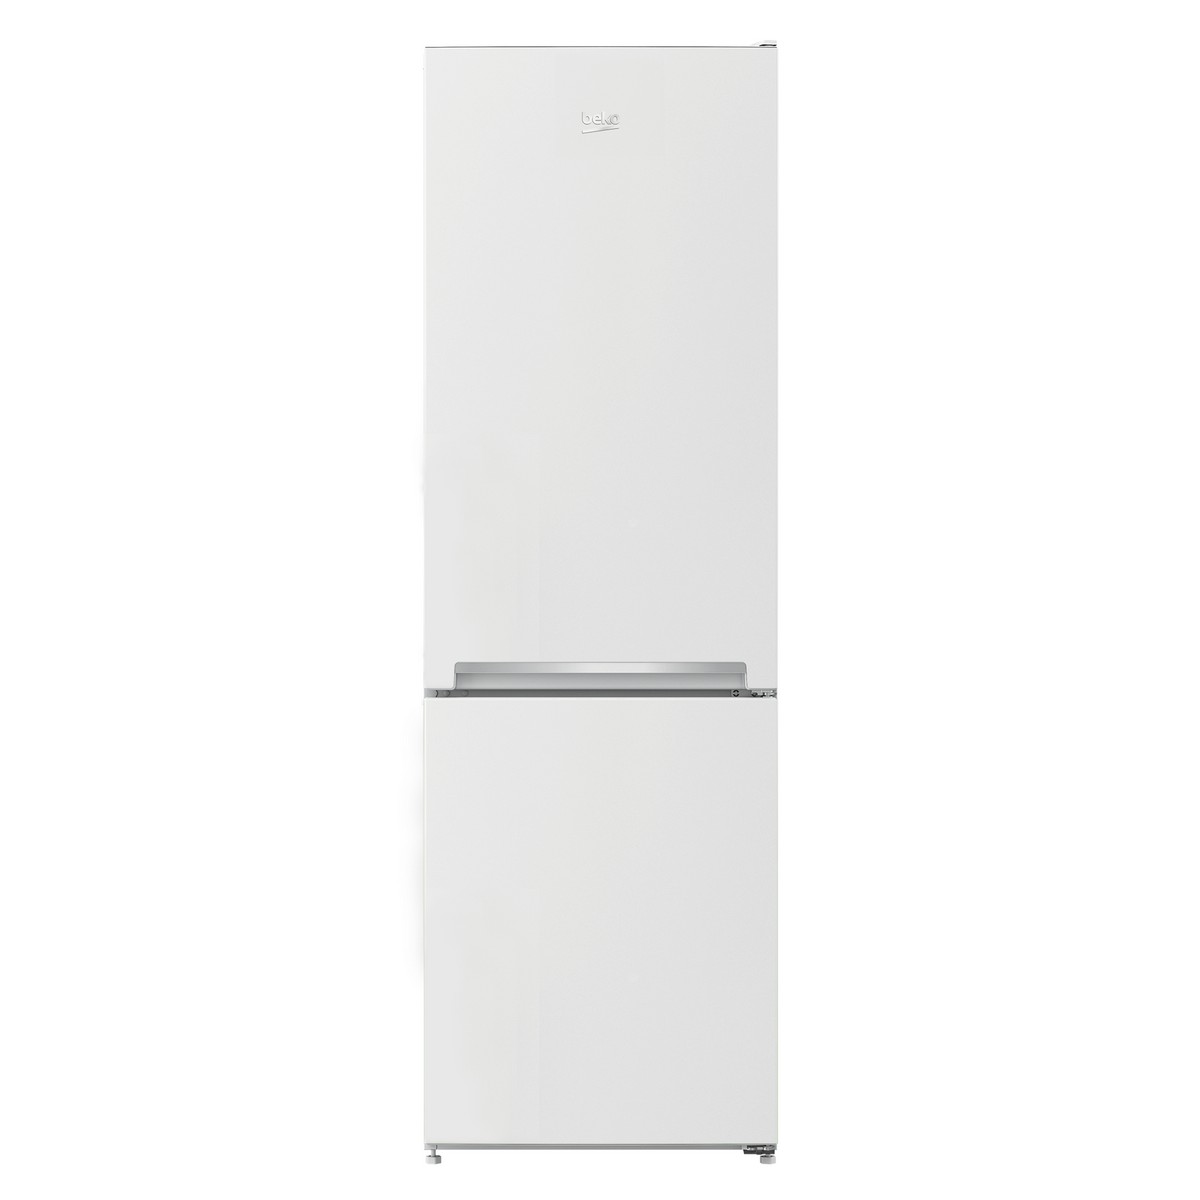 Холодильник Beko RCSA 270K20 W